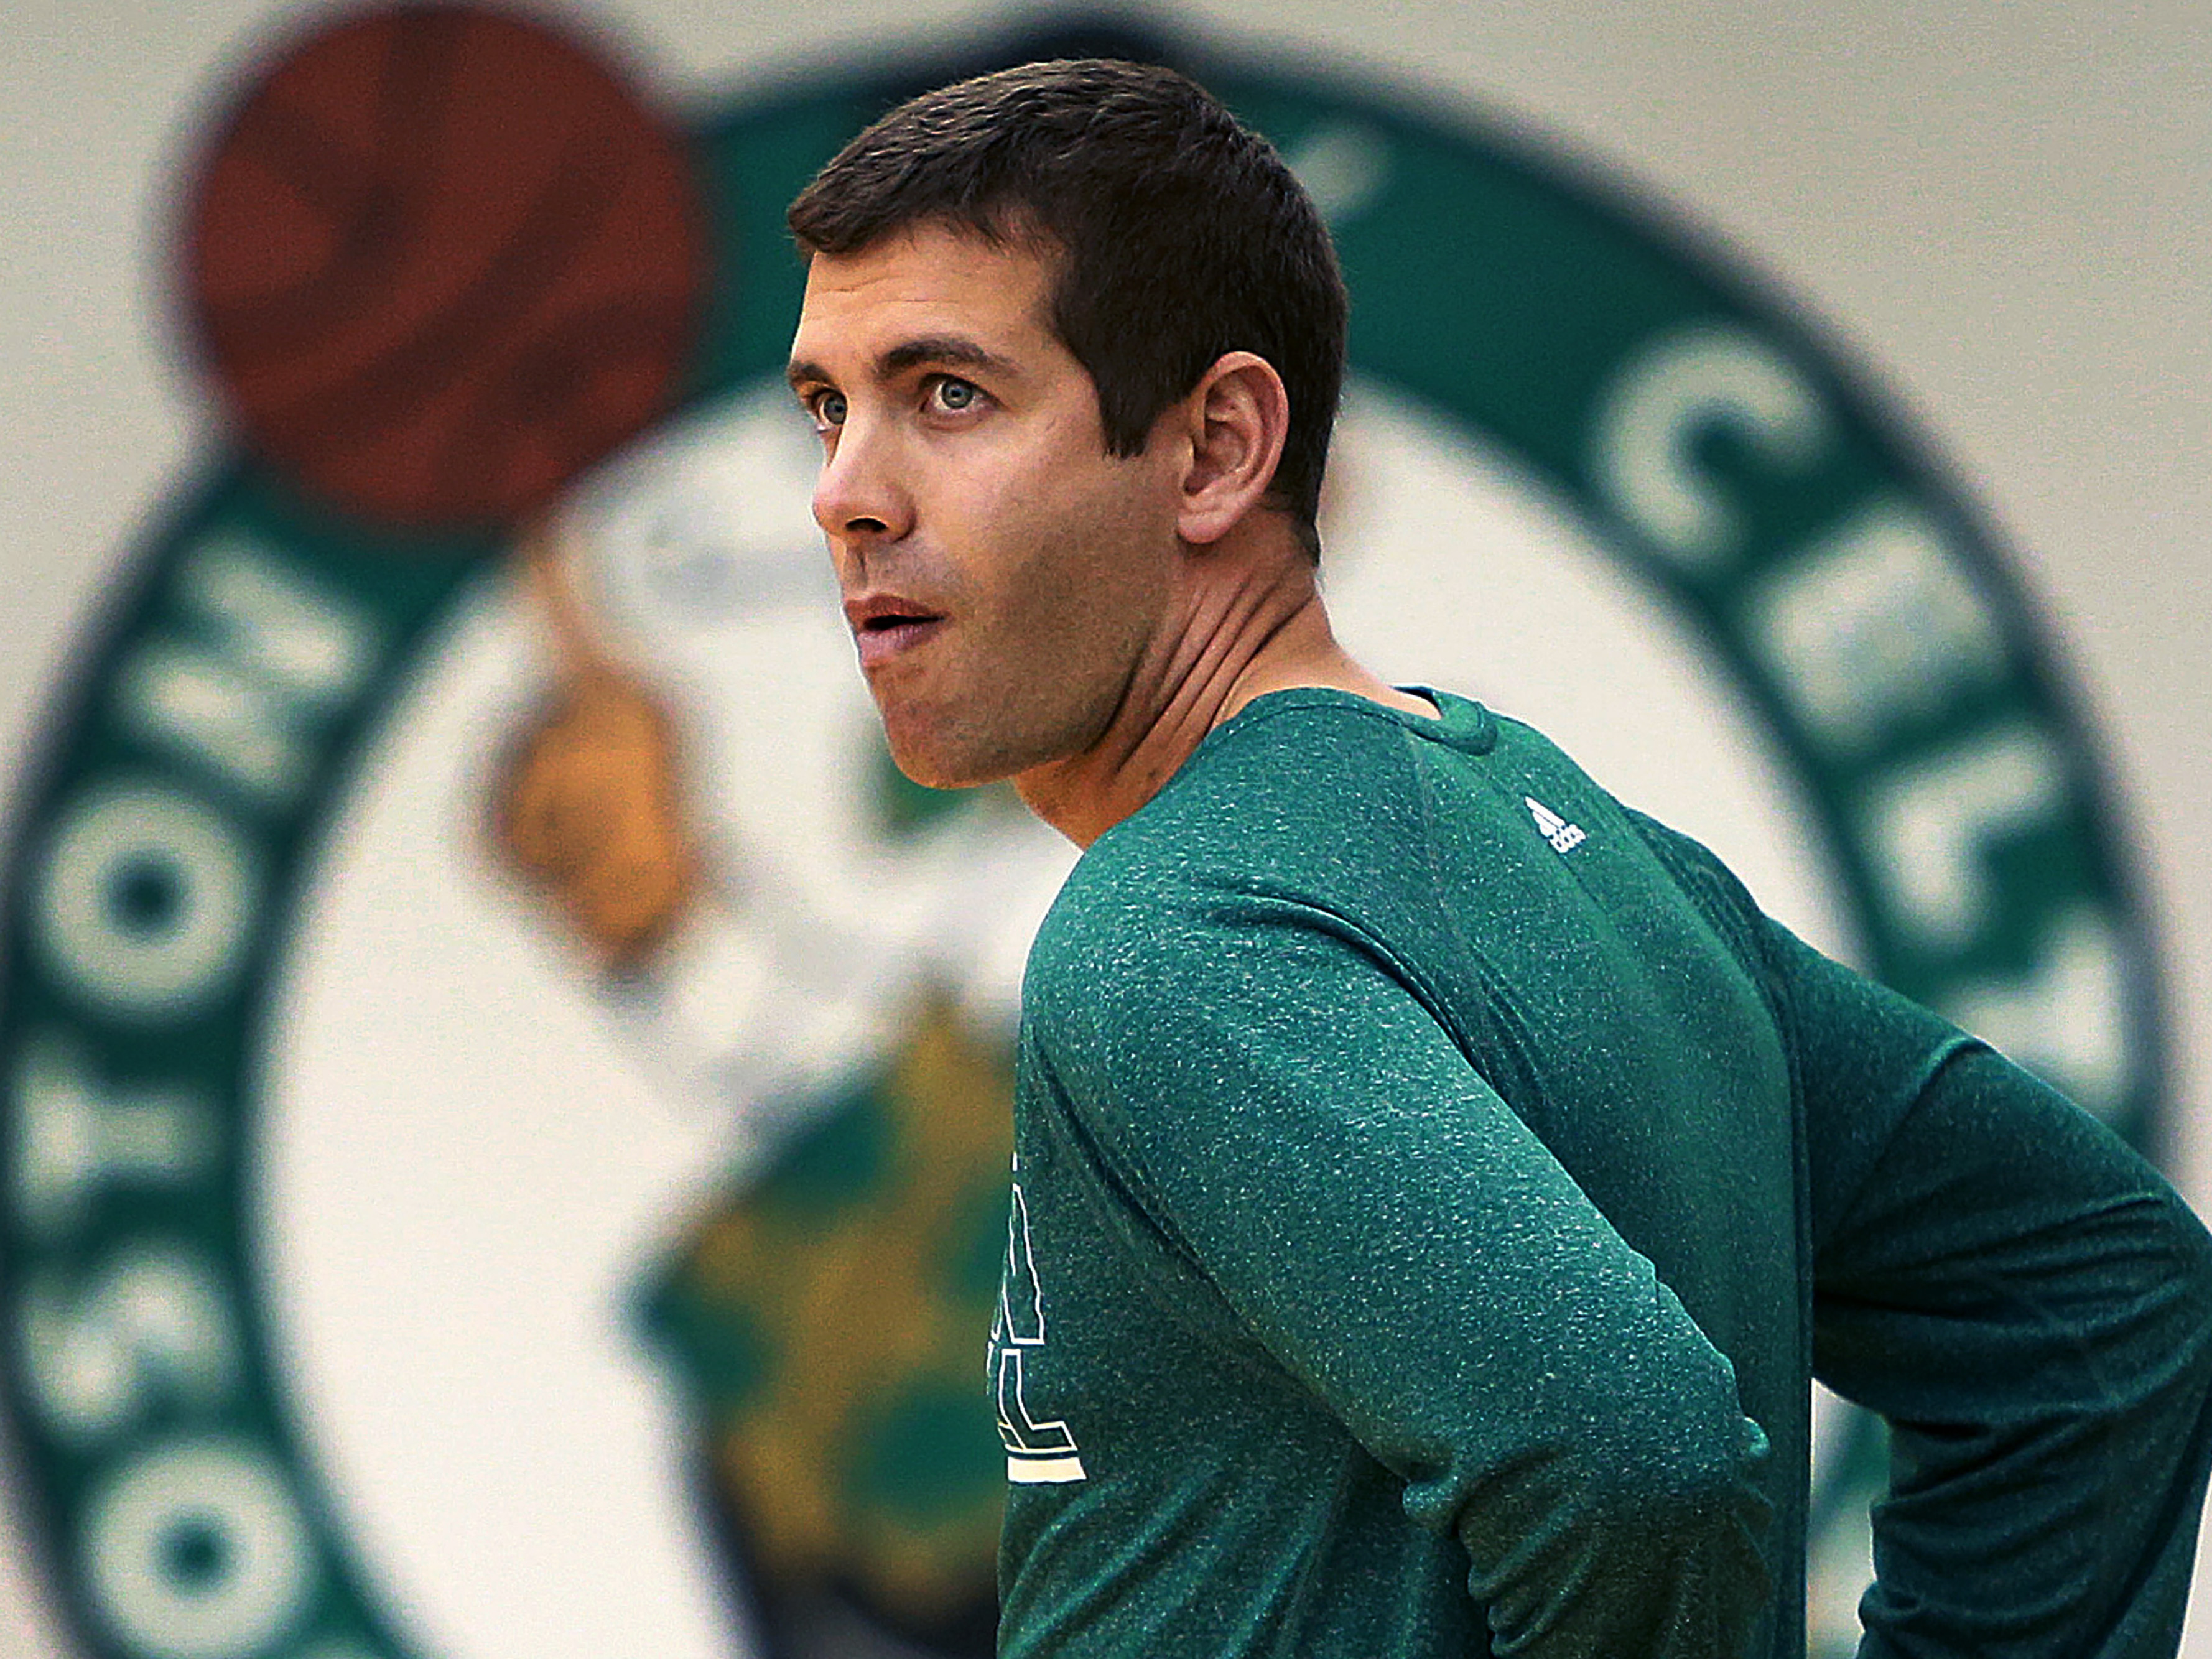 As Celtics unravel vs. Heat, Brad Stevens missteps loom large